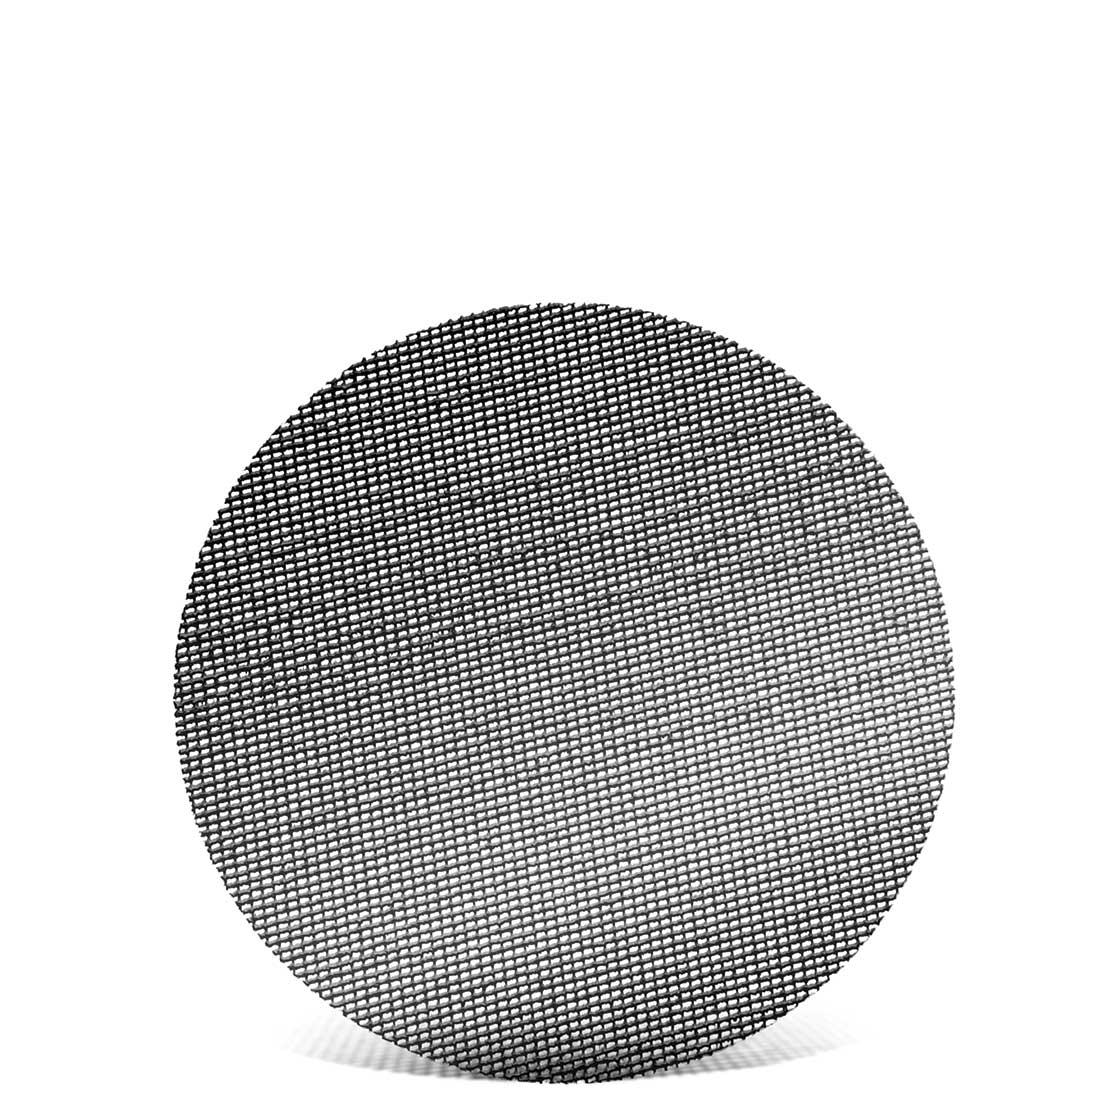 MENZER Klett-Schleifgitter für Exzenterschleifer, K60–180, Ø 115 mm / Gitter / Siliciumcarbid